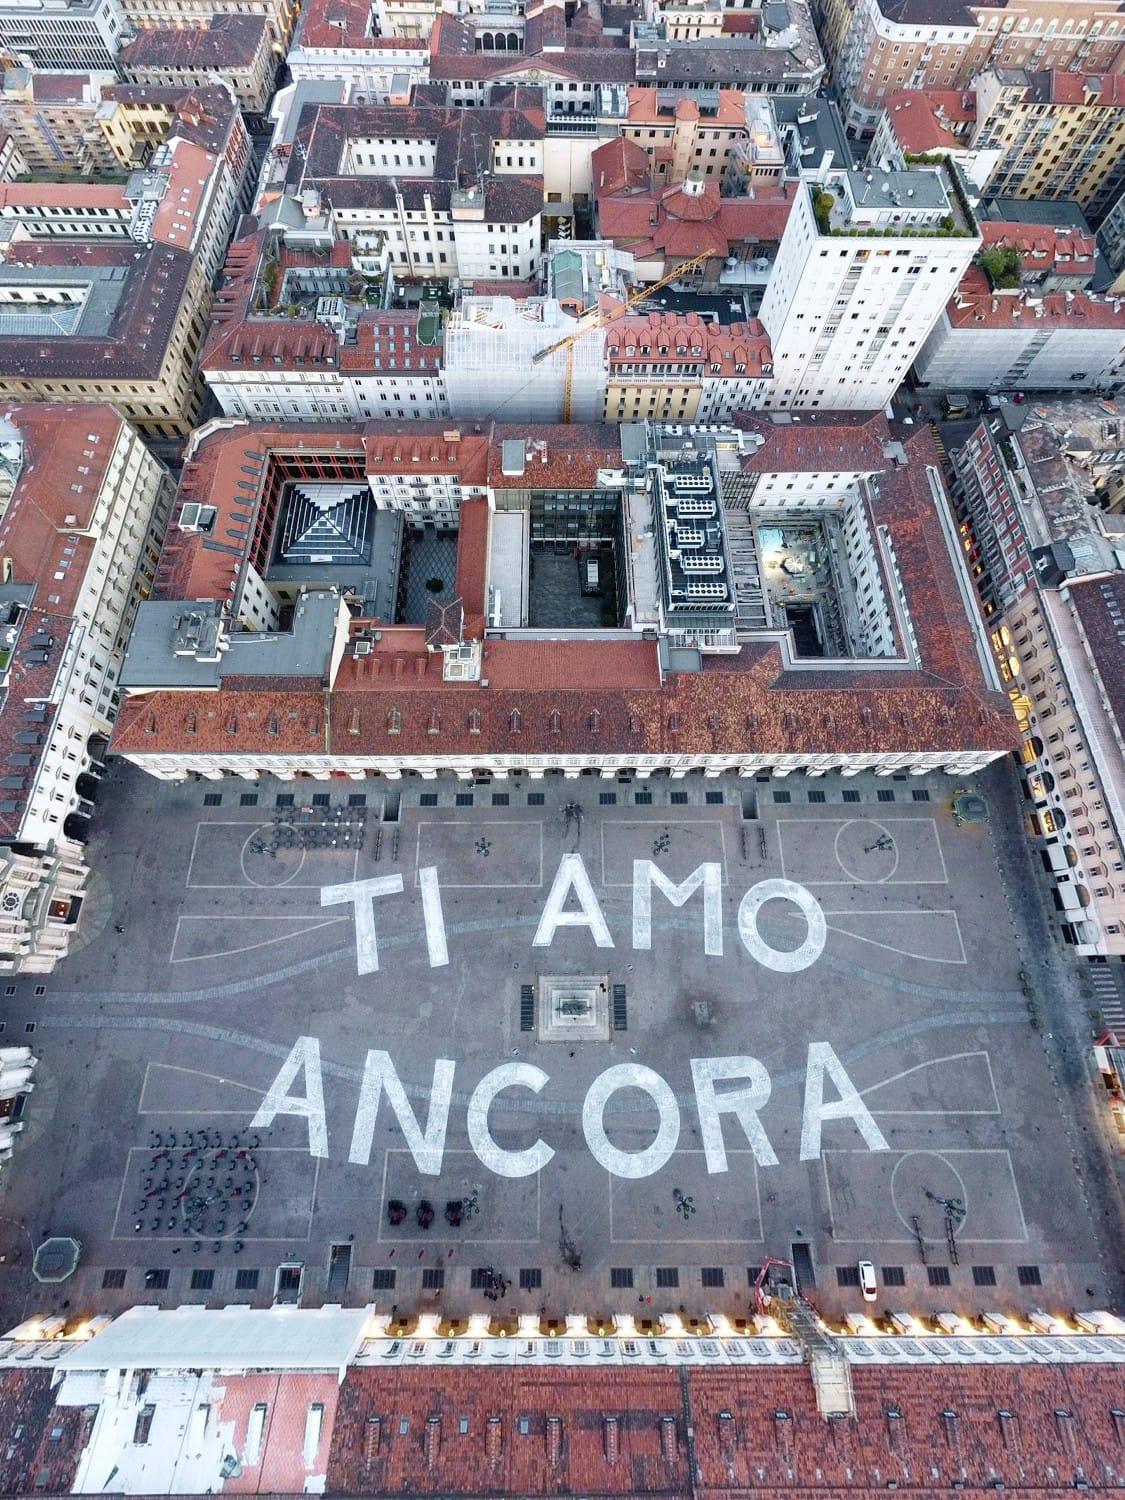 Dichiarazione d’amore della band “Eugenio in via Gioia”, scritta gigantesca in Piazza Salotto